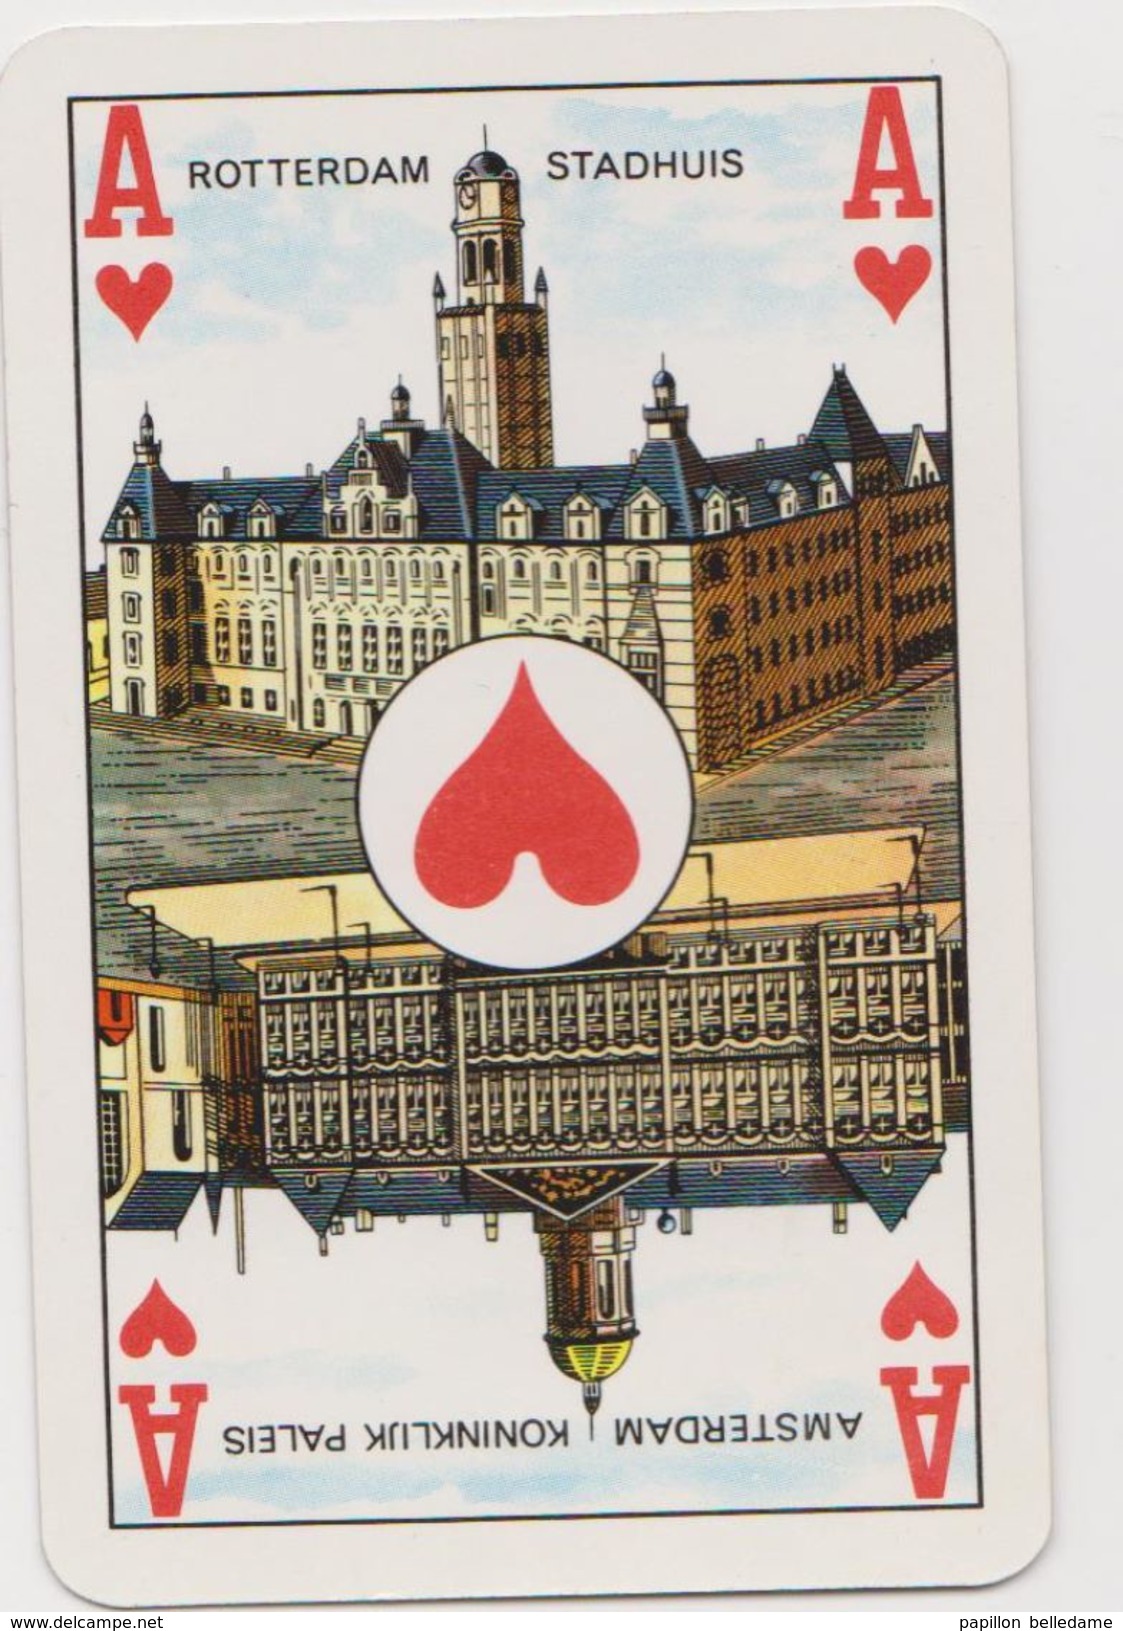 Amsterdam    oud spel van 52 speelkaarten BOKMA  - ancien jeu de 52 cartes à jouer BOKMA